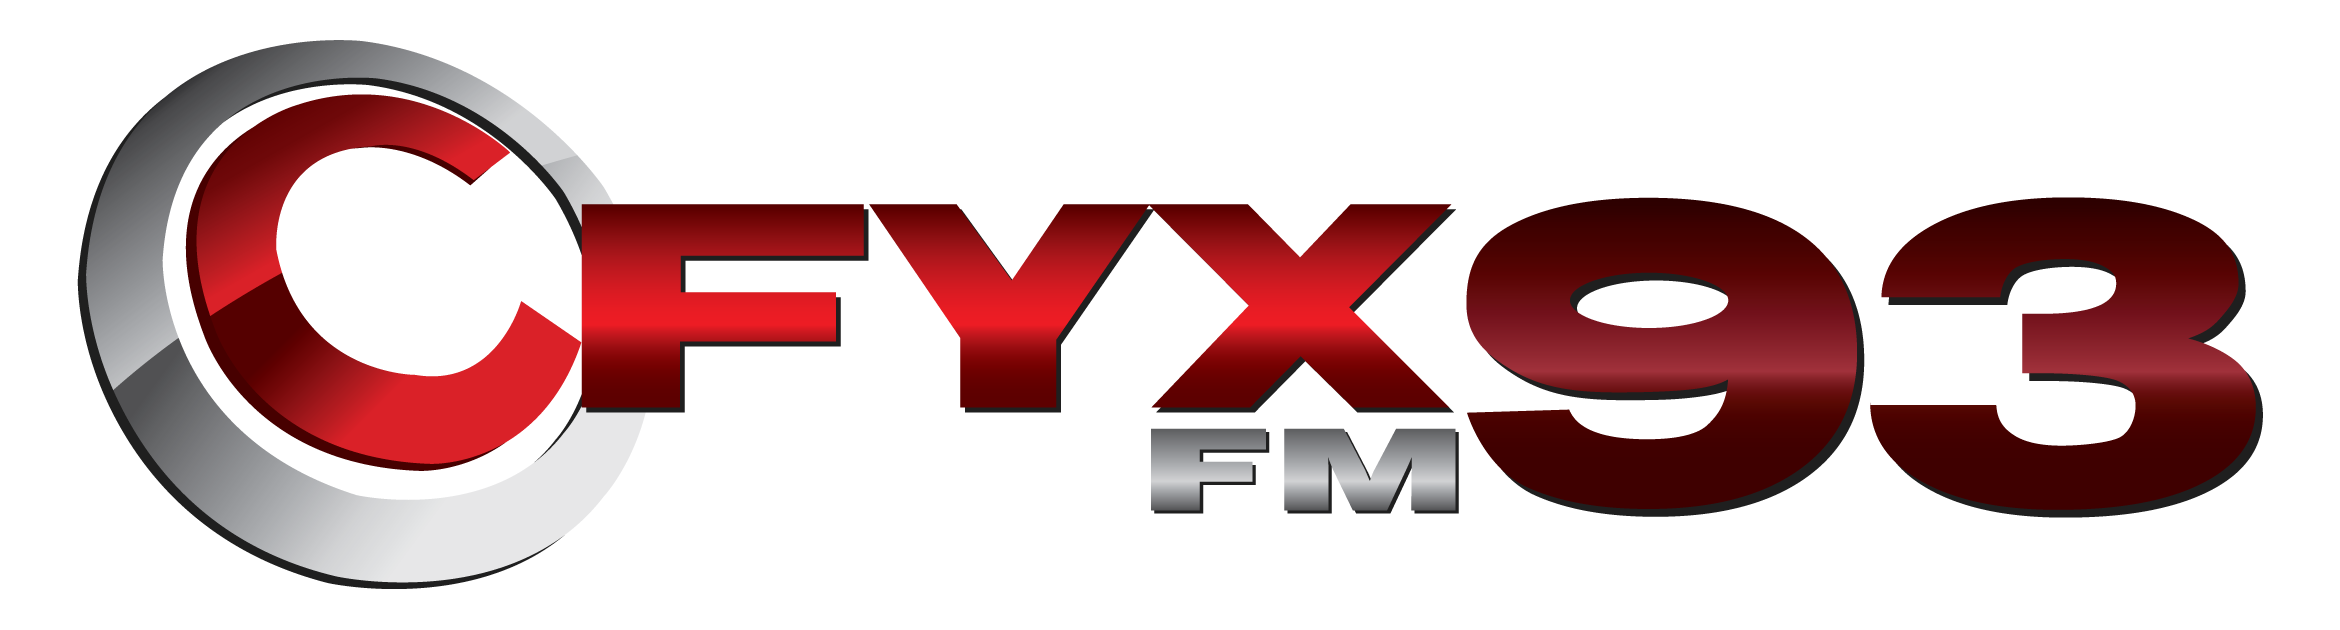 CFYX FM